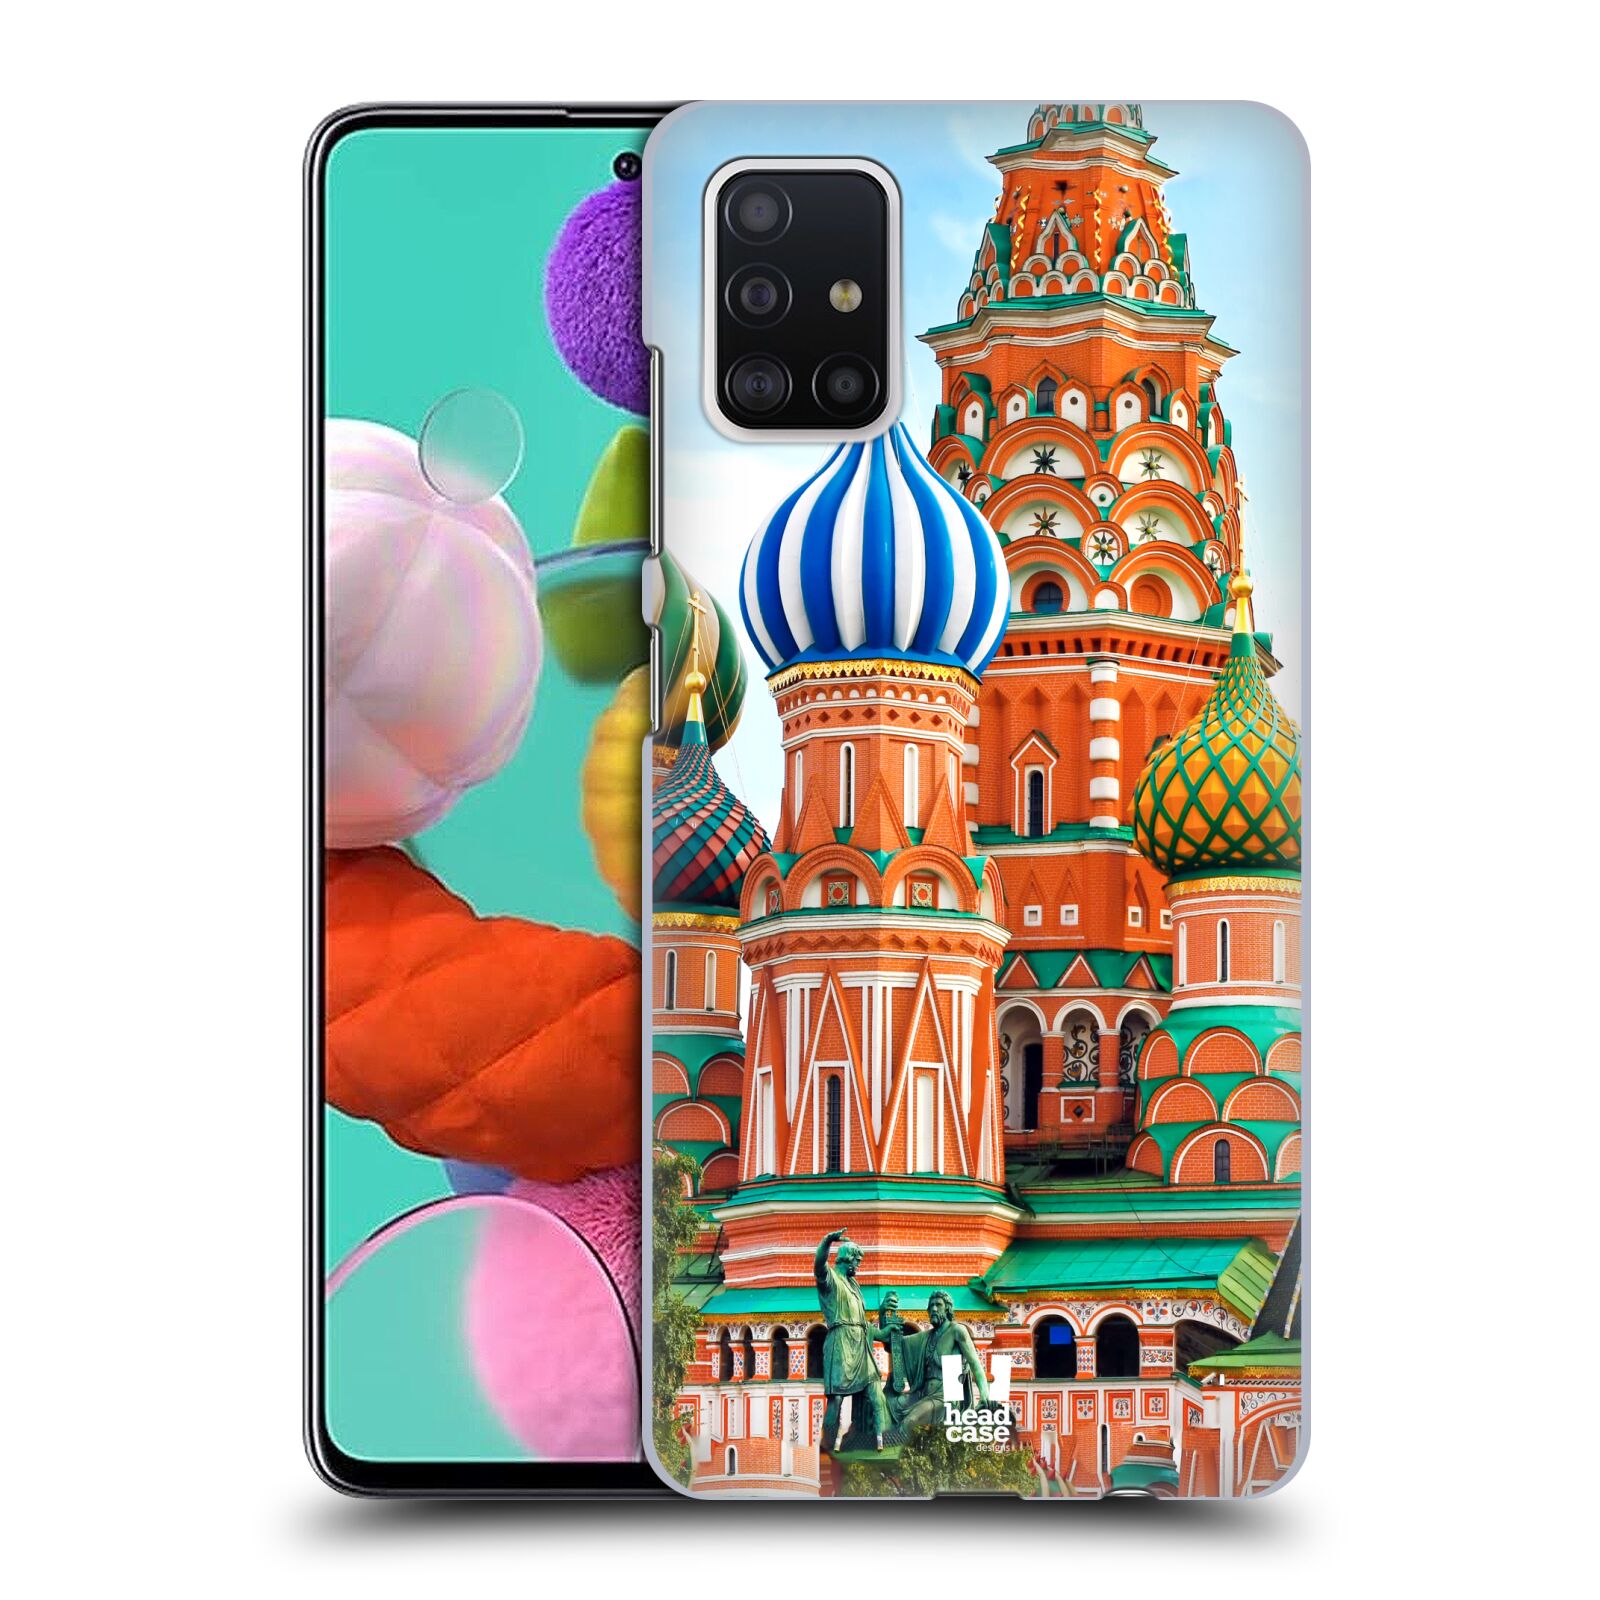 Pouzdro na mobil Samsung Galaxy A51 - HEAD CASE - vzor Města foto náměstí RUSKO,MOSKVA, RUDÉ NÁMĚSTÍ